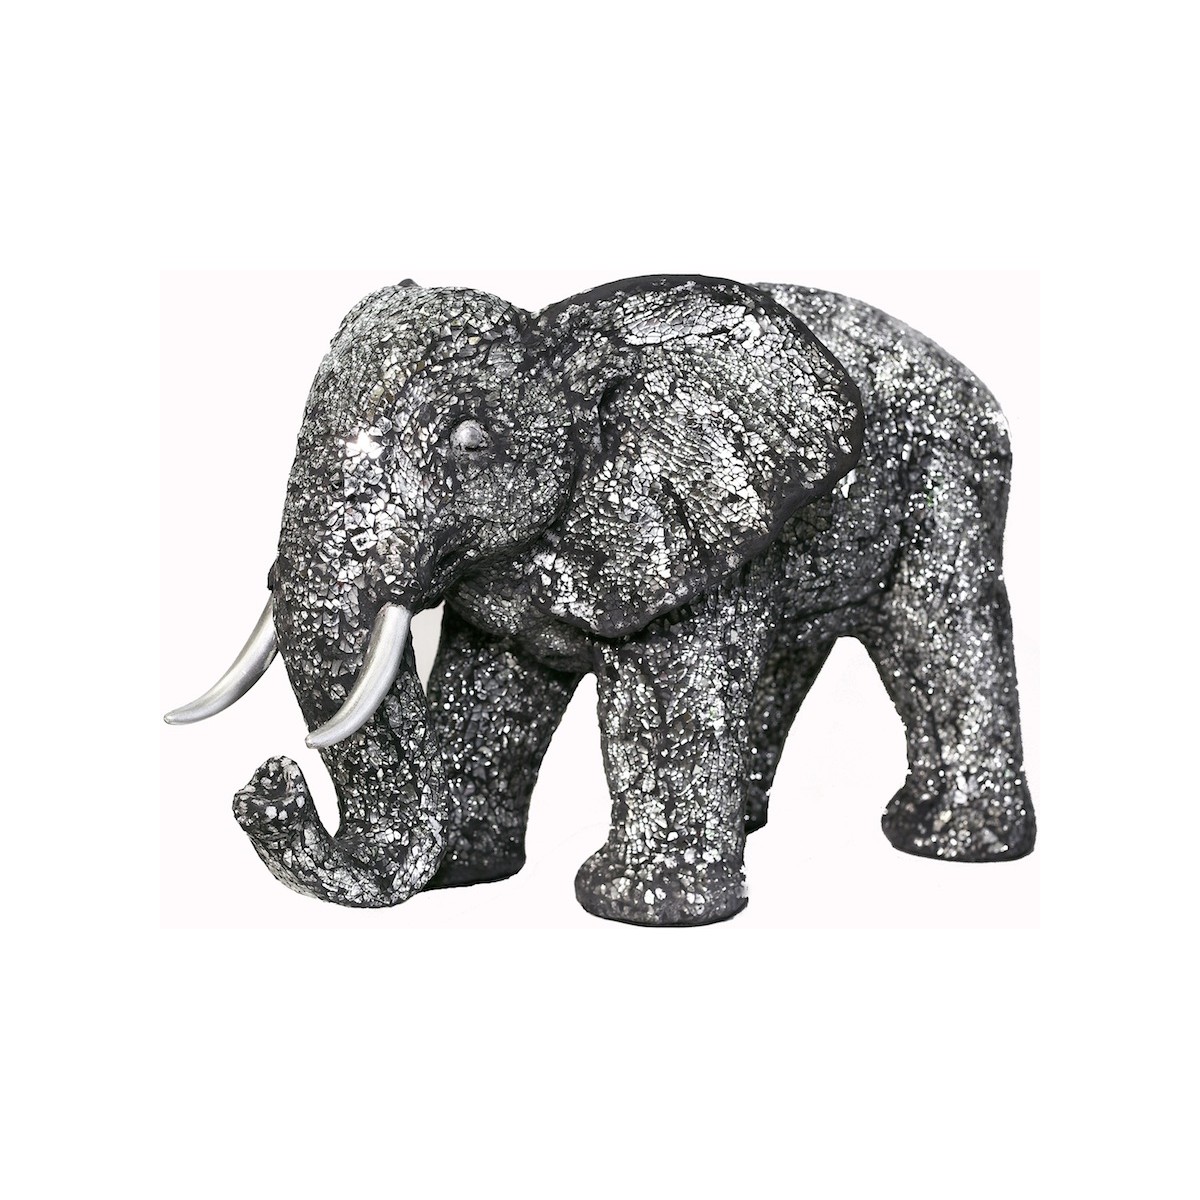 Statua dell'elefante design scultura decorativa in resina (nero, argento) -  AMP Story 5542